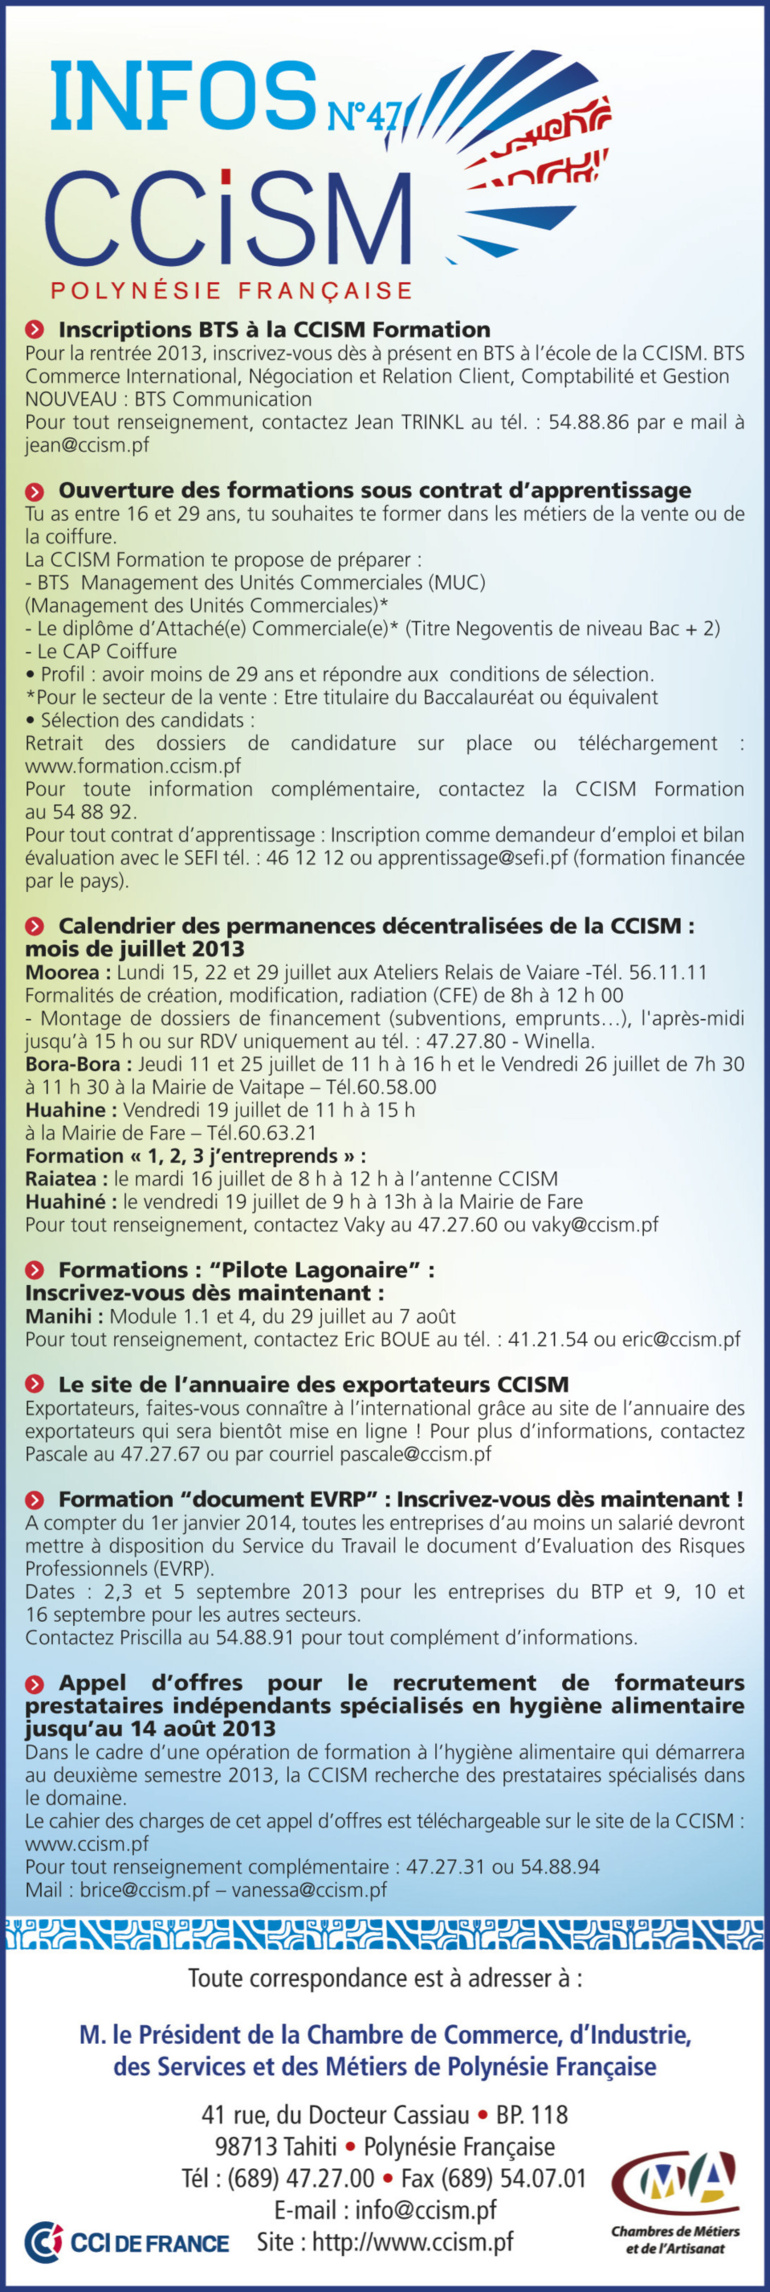 Infos CCISM N°47